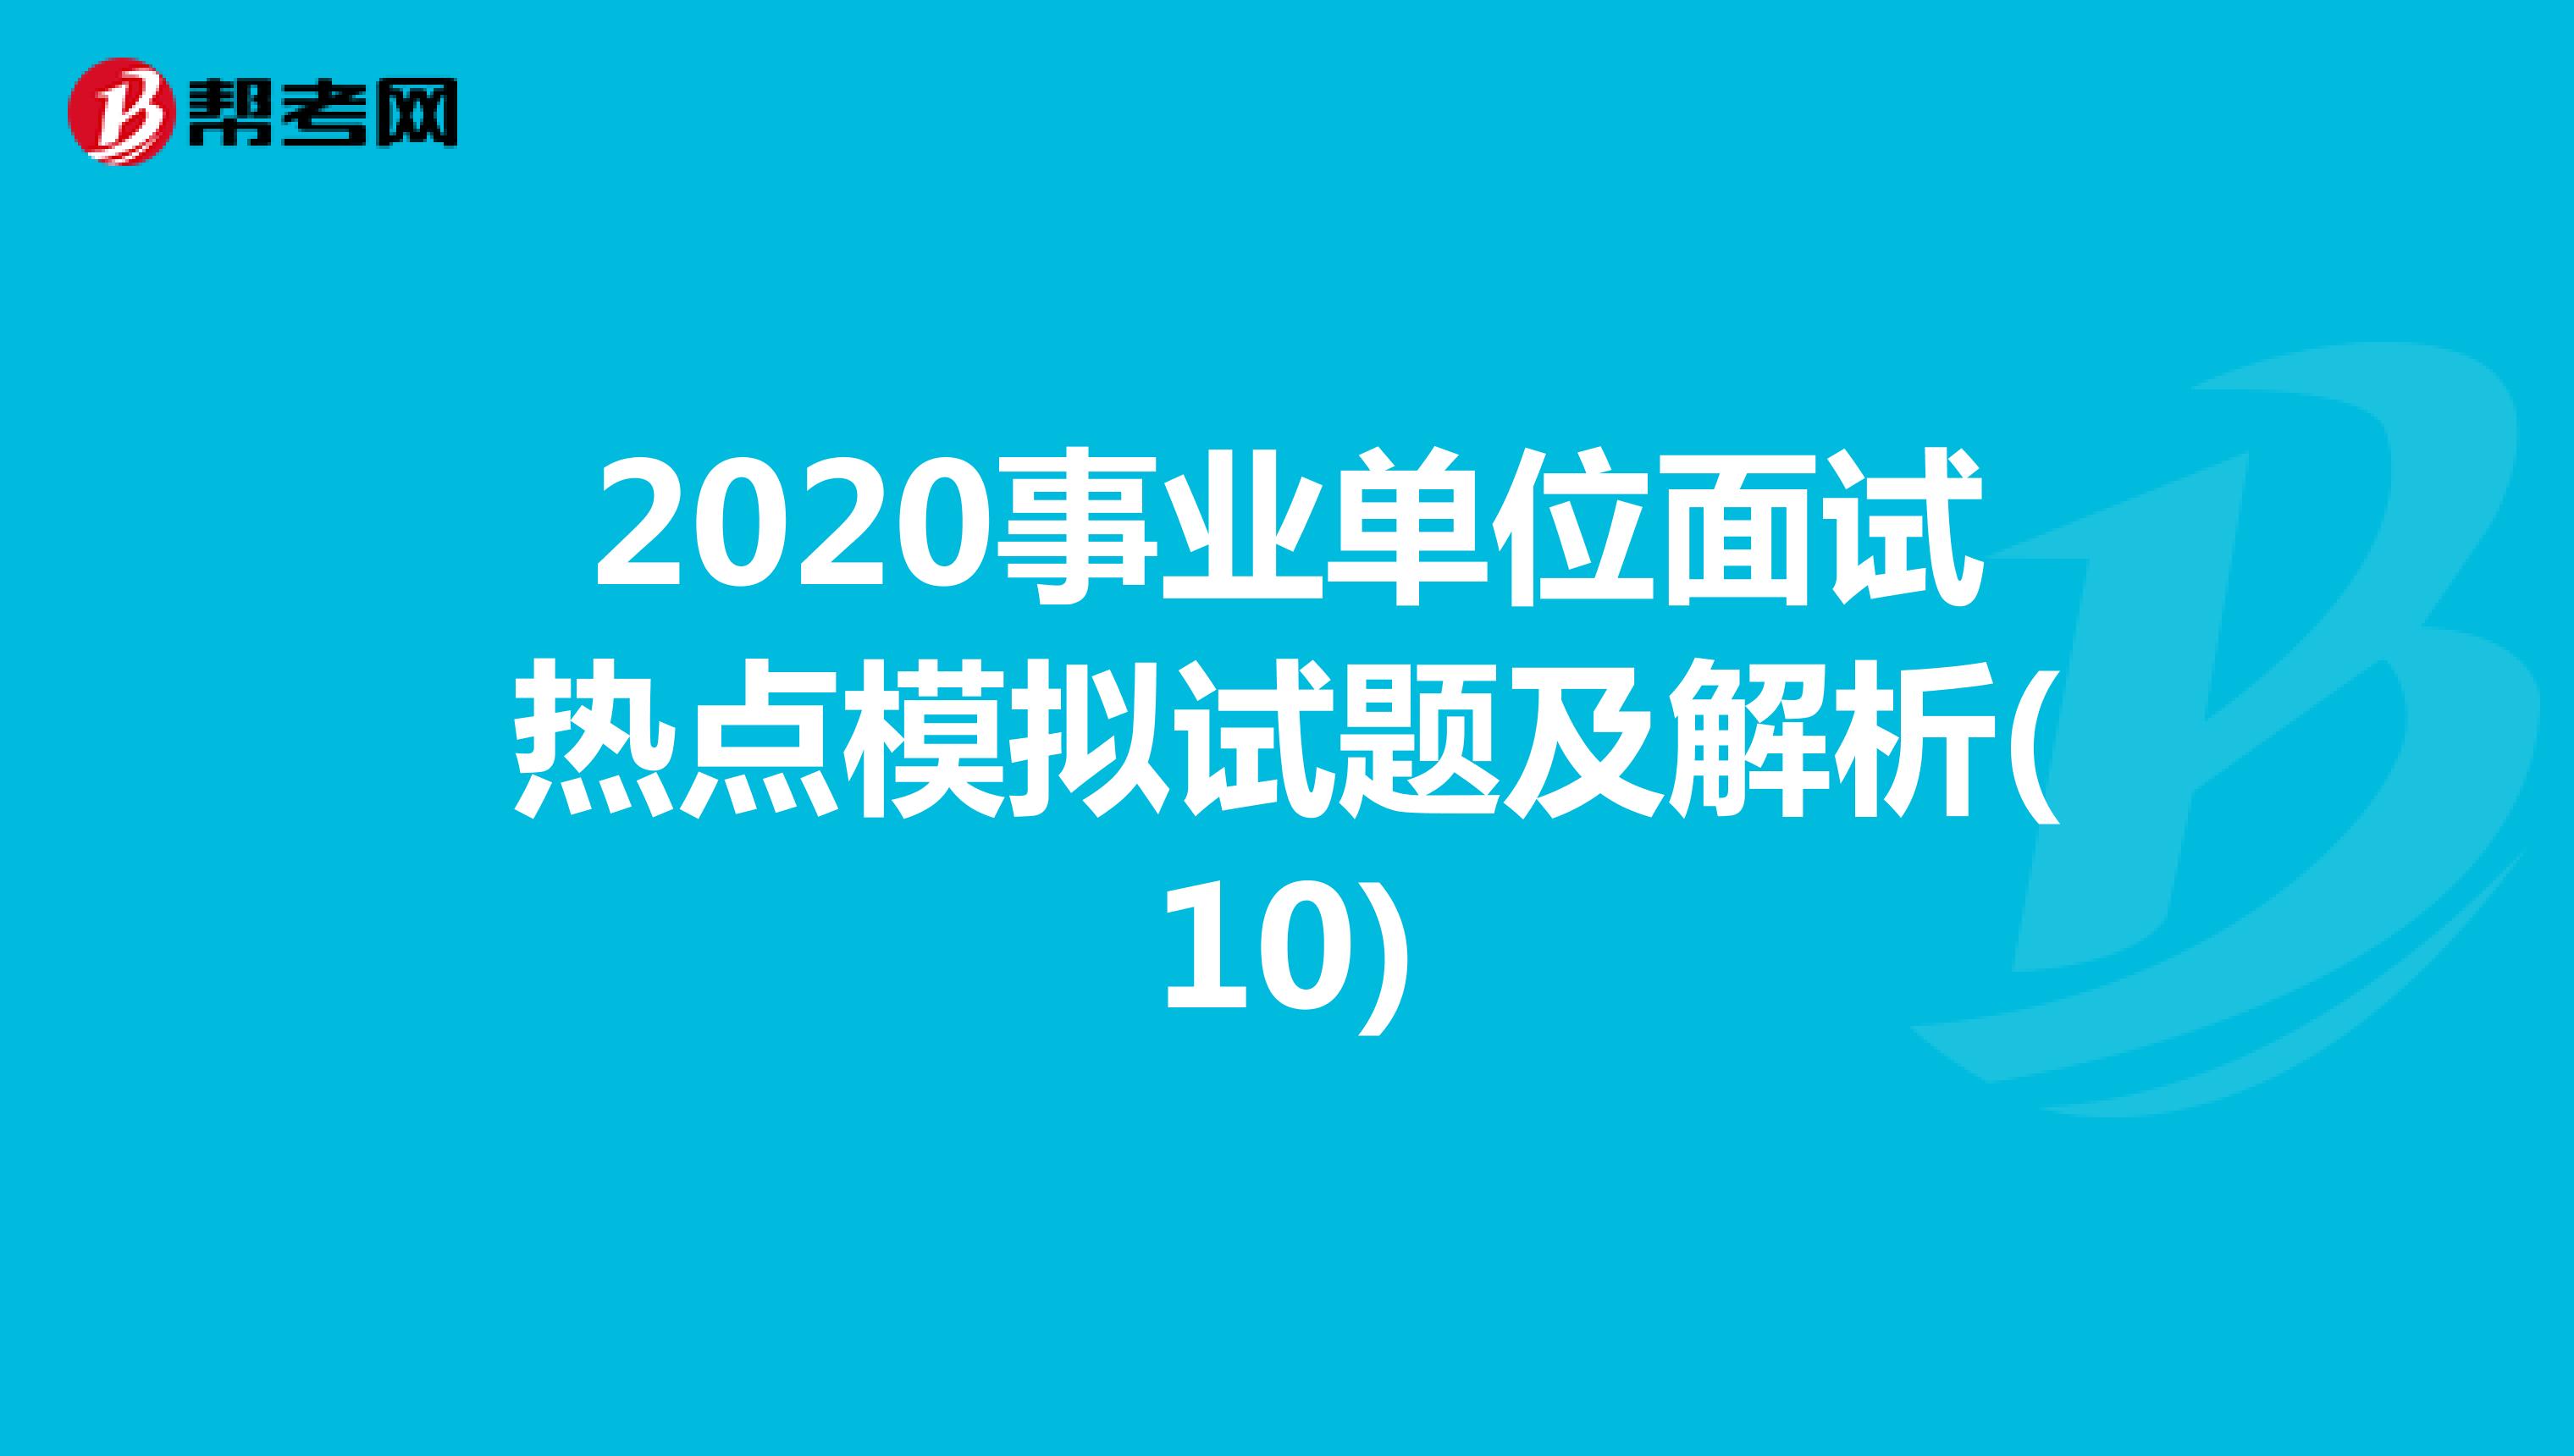 2020事业单位面试热点模拟试题及解析(10)